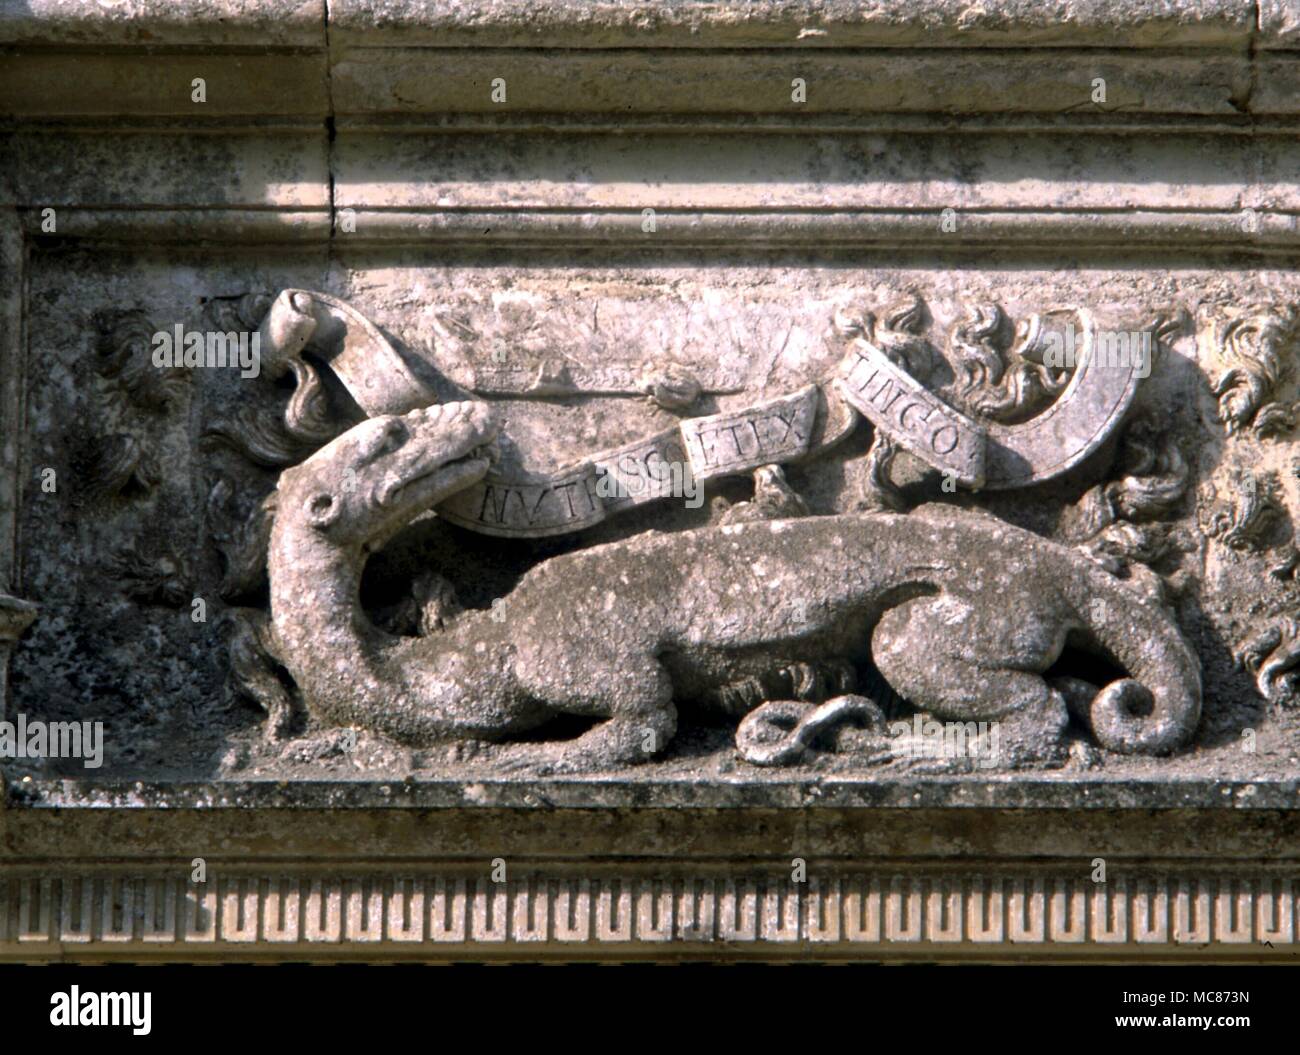 Animaux - la salamandre, dérivé d'un appareil, héraldique sur les murs du château de Blois. Design du 17e siècle Banque D'Images